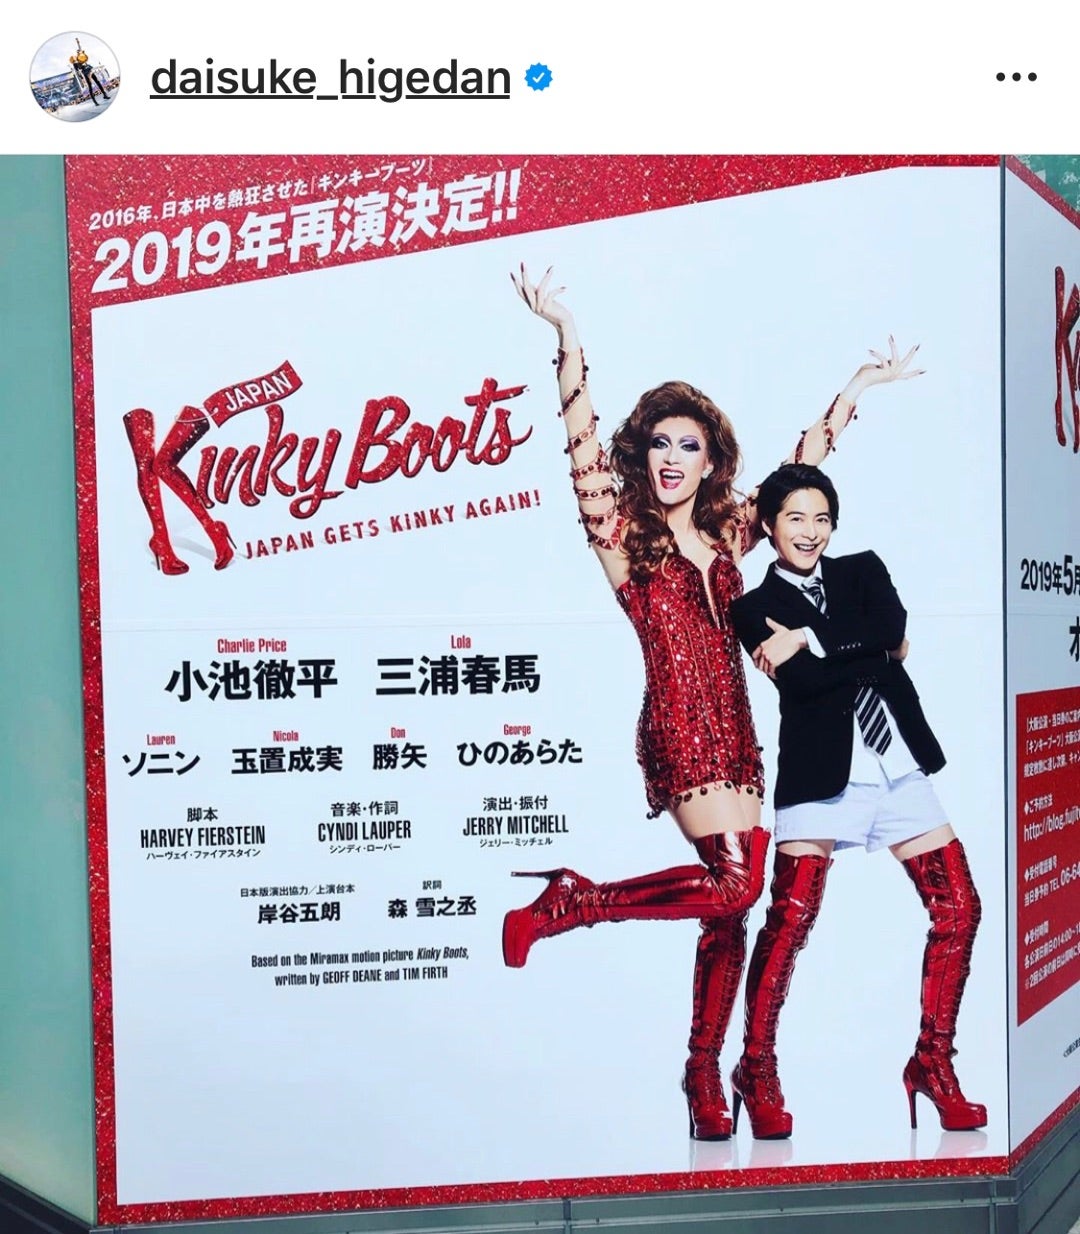 代引可】 Kinky Boots キンキーブーツ 2019年再演 フライヤー2枚セット